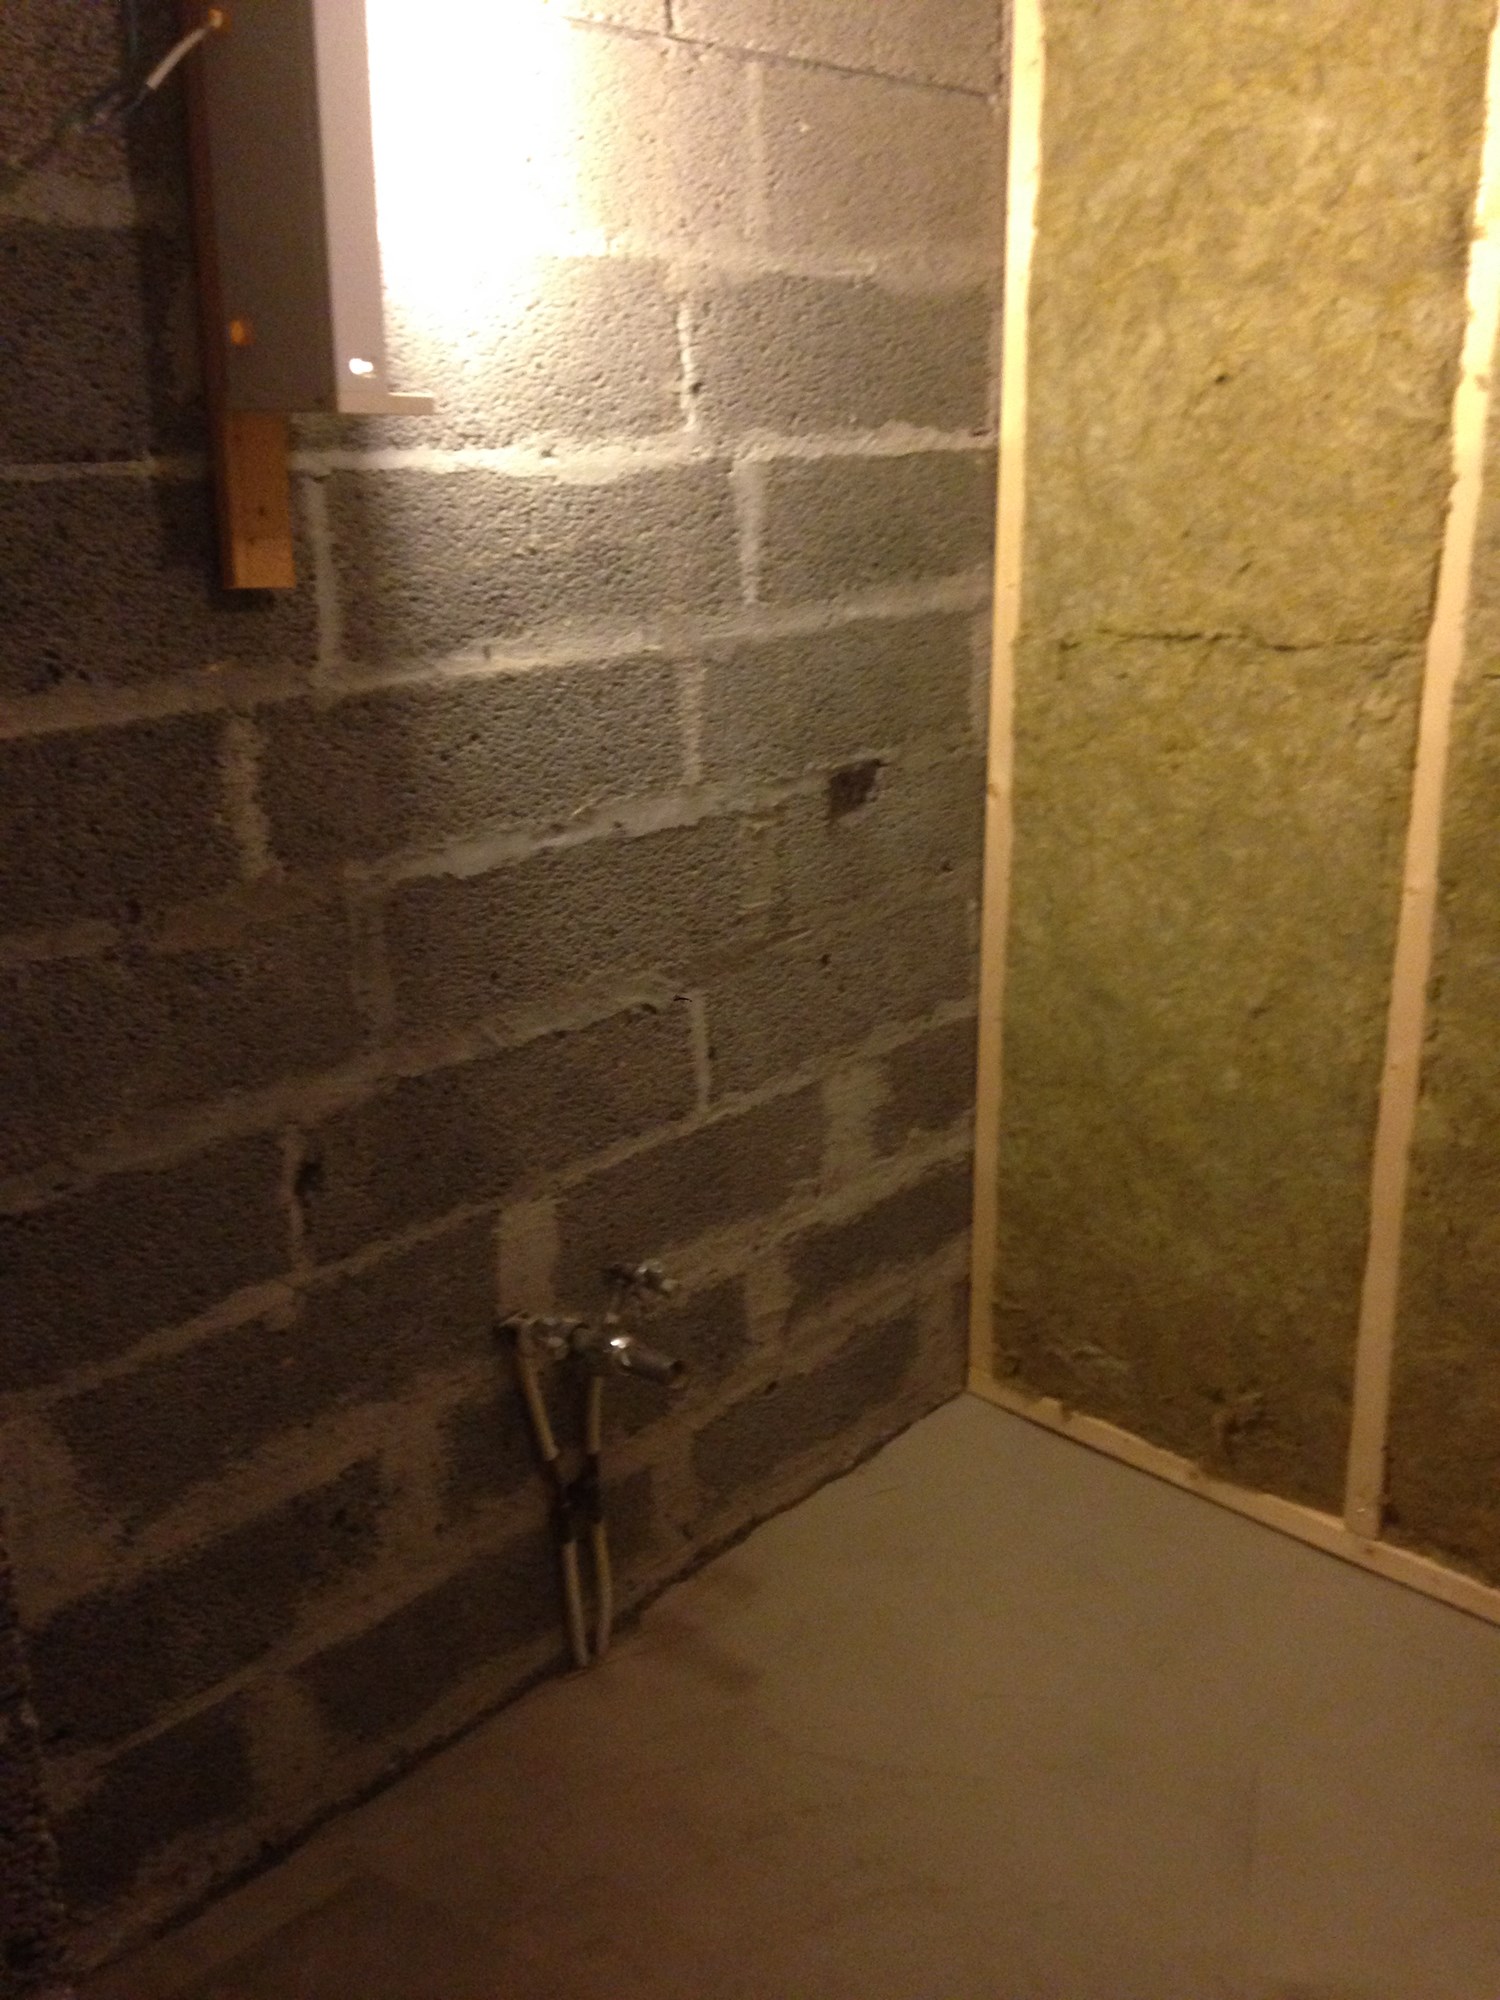 Oppbygging av vegg for fliser og våtromsplate. - IMG_3409.JPG - snordal